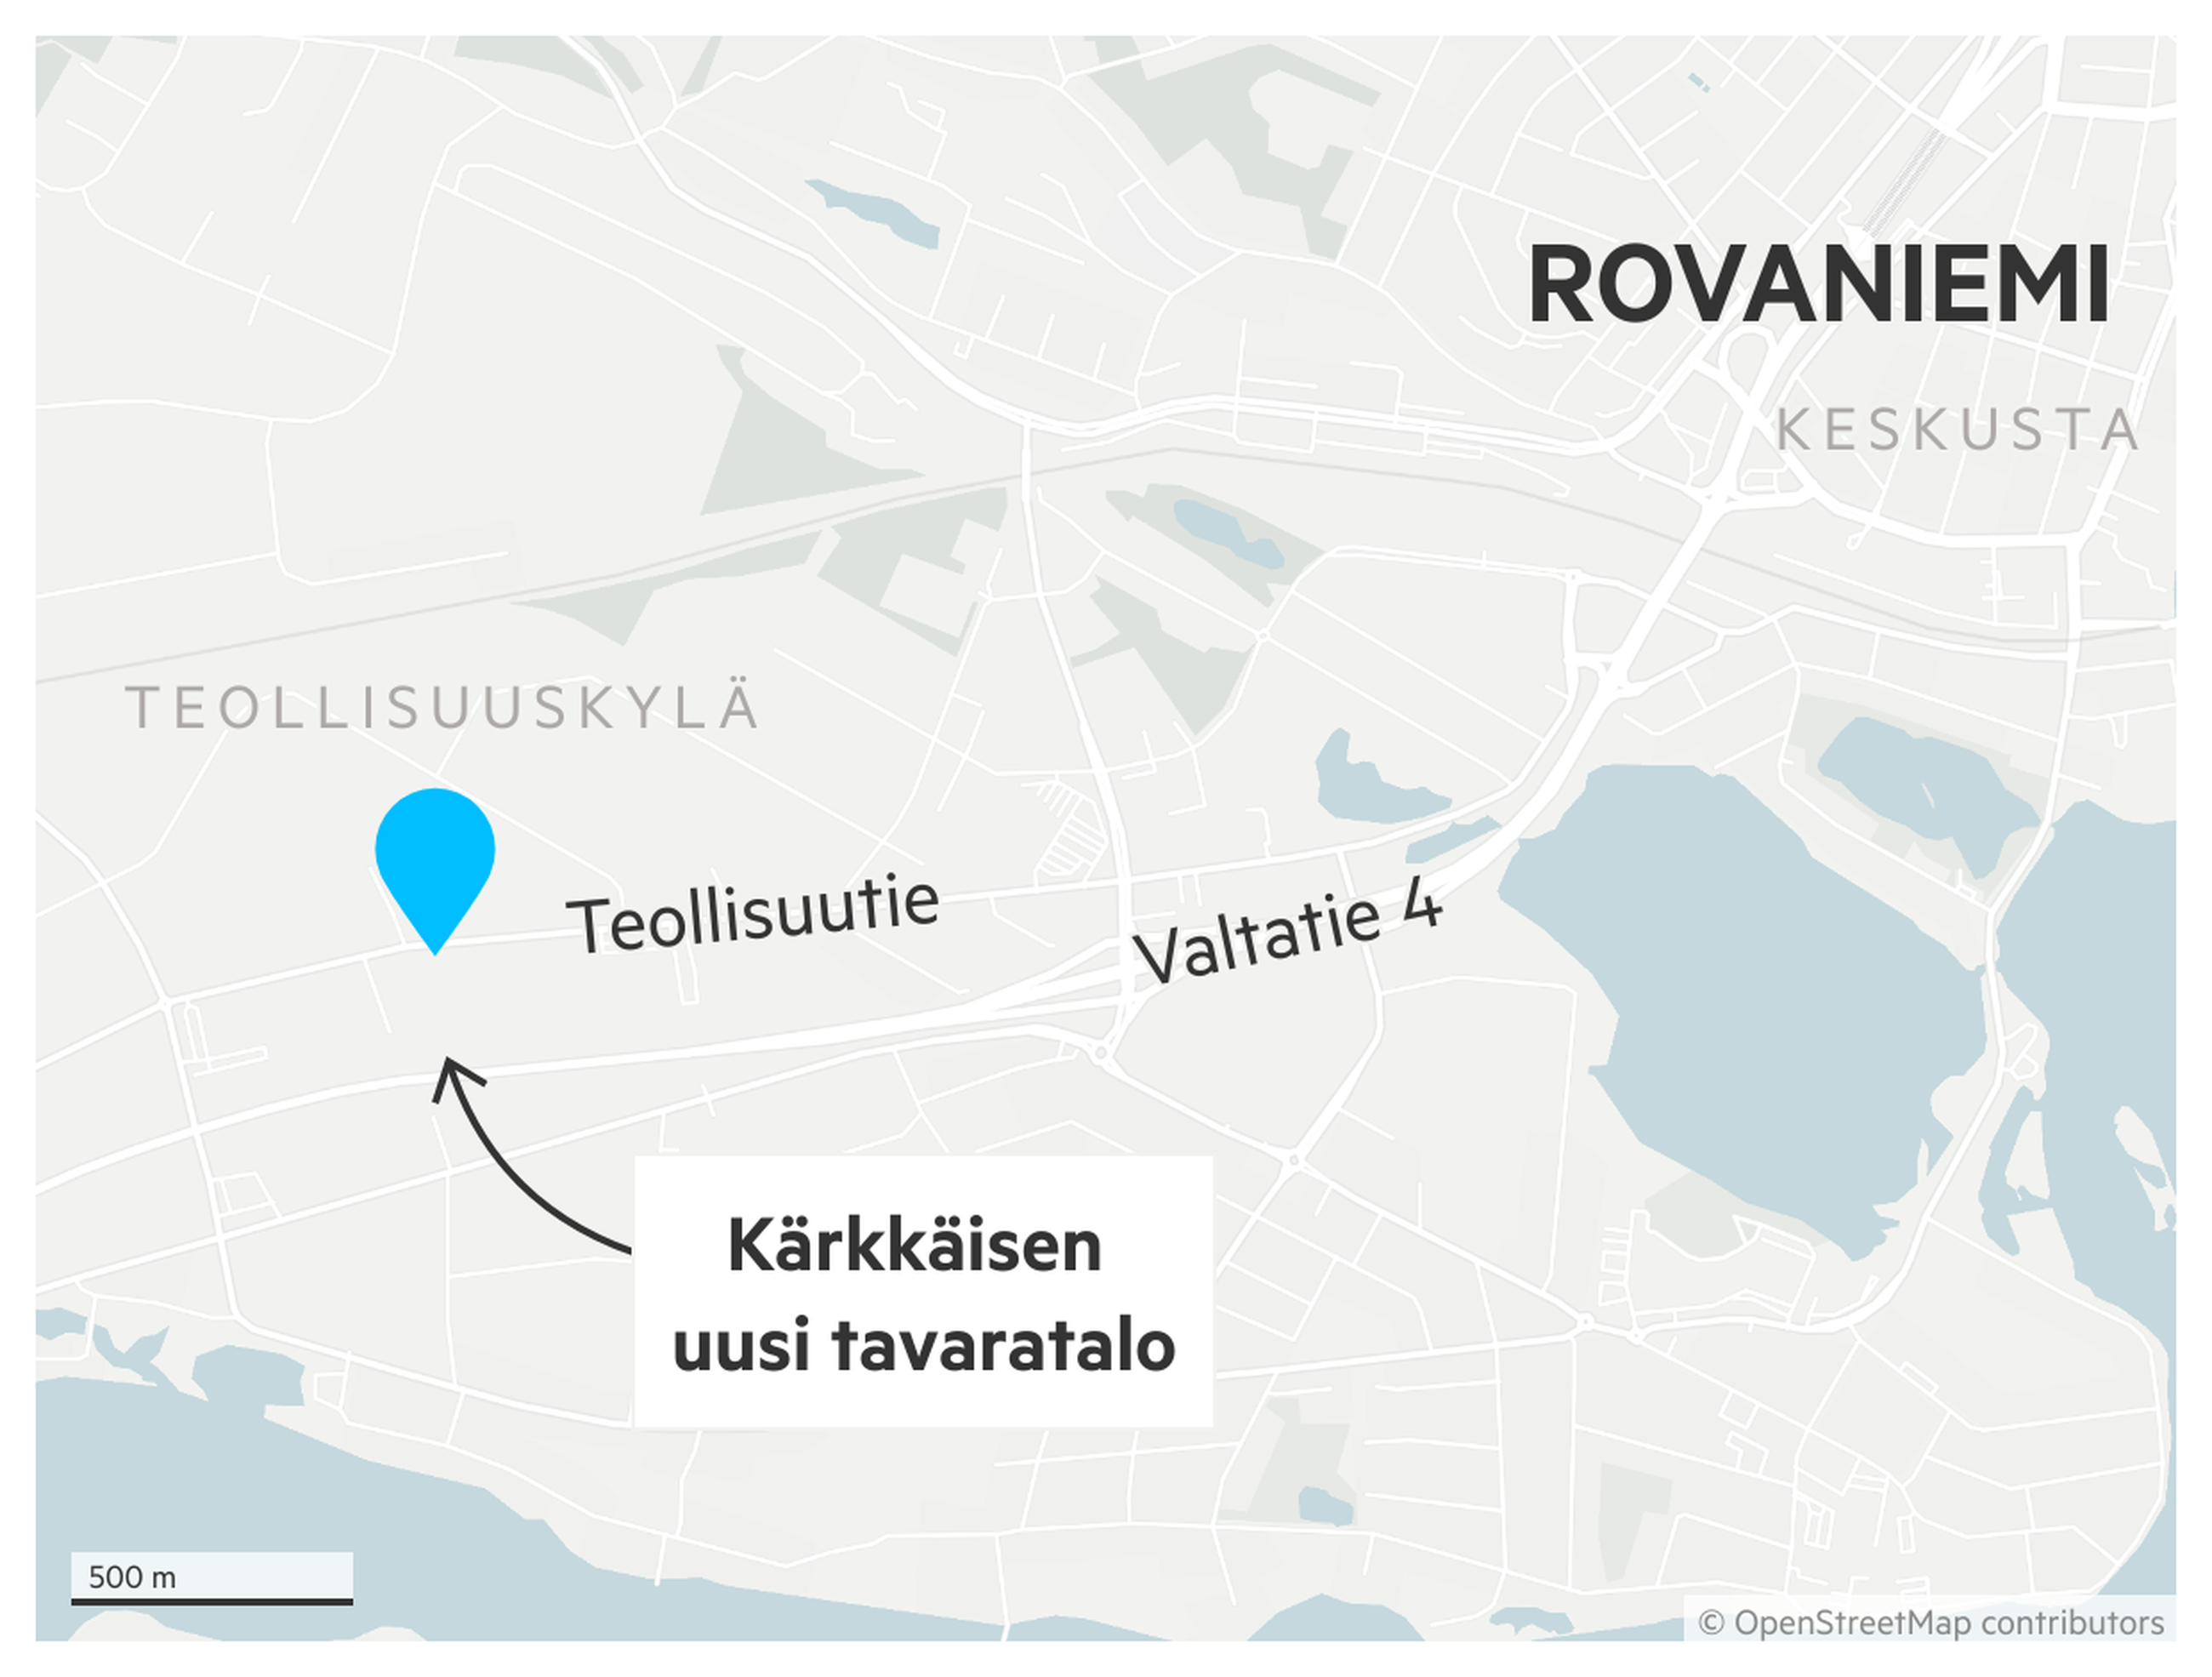 Kärkkäinen saattaa tulla Rovaniemelle piankin – kaava on jo lähes valmis |  Lapin Kansa